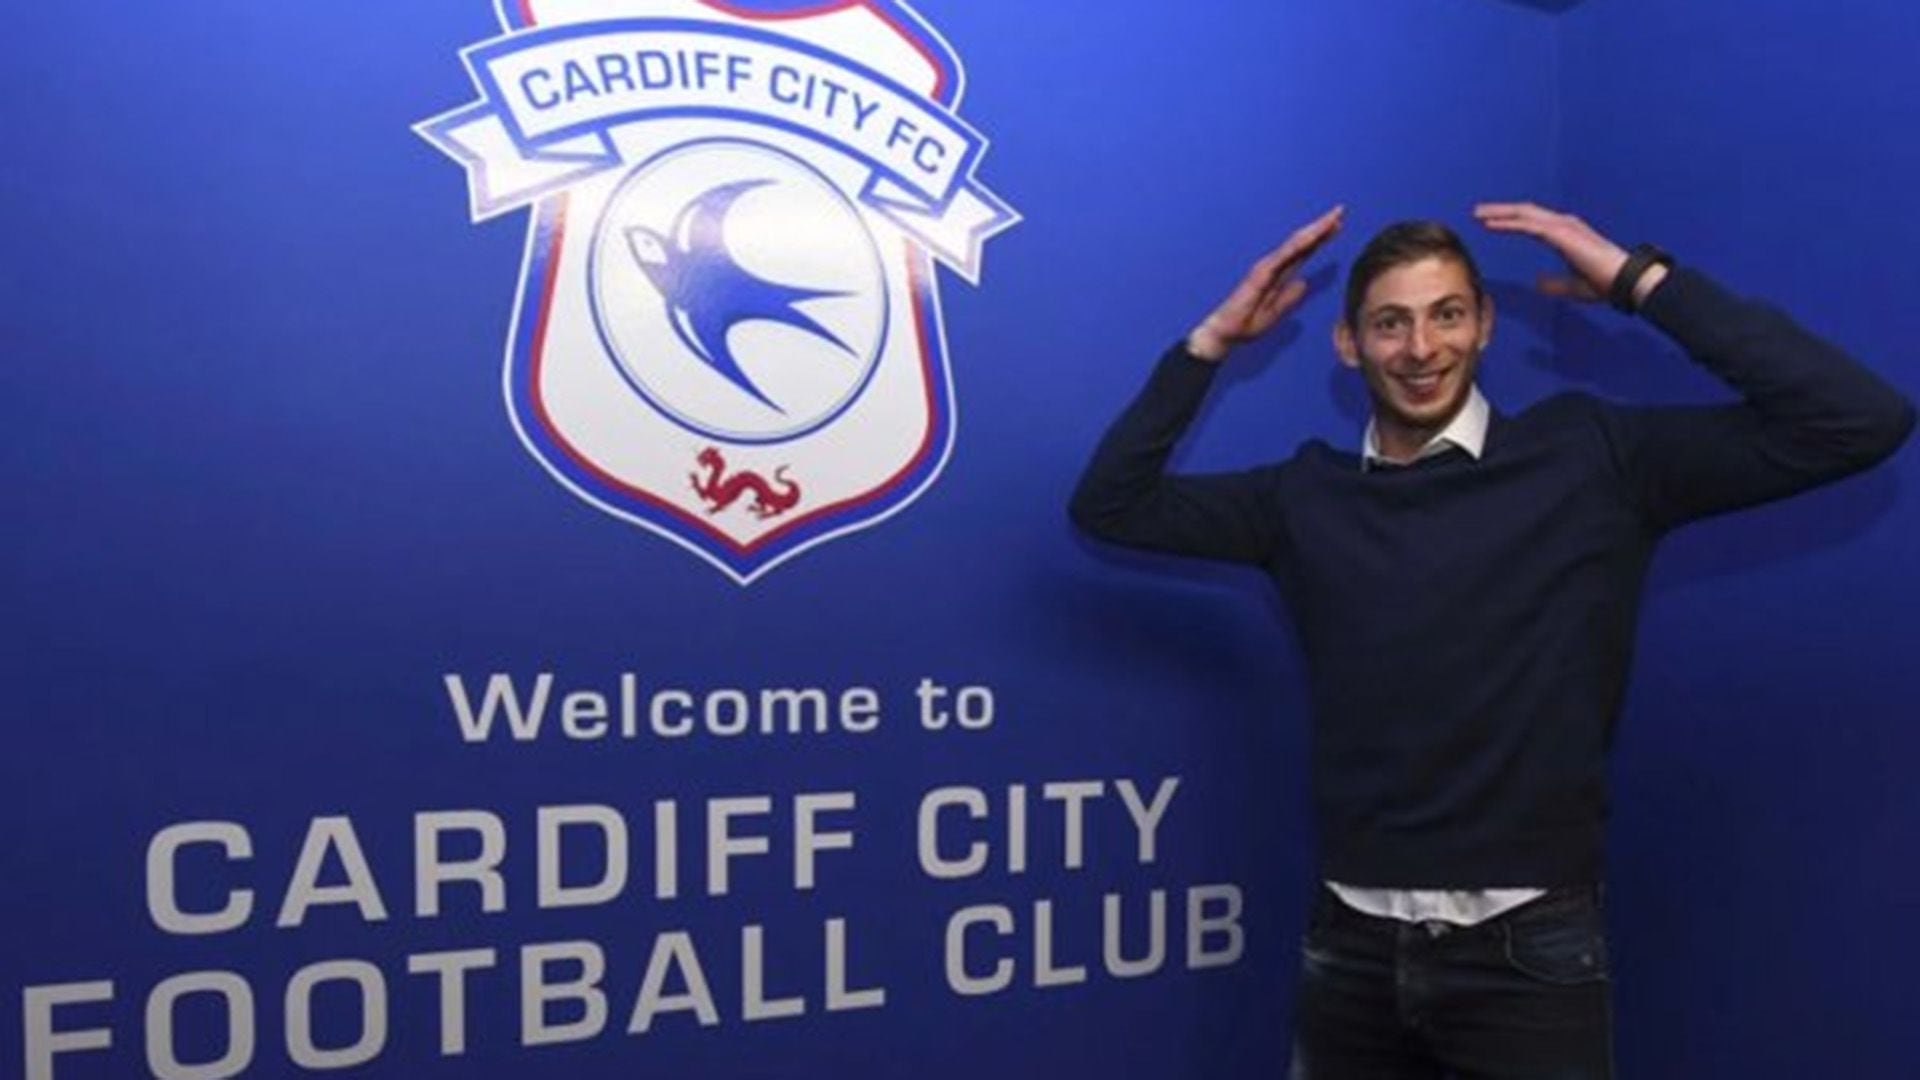 Sala había sido presentado por el Cardiff de Gales, que se niega a pagar la transferencia